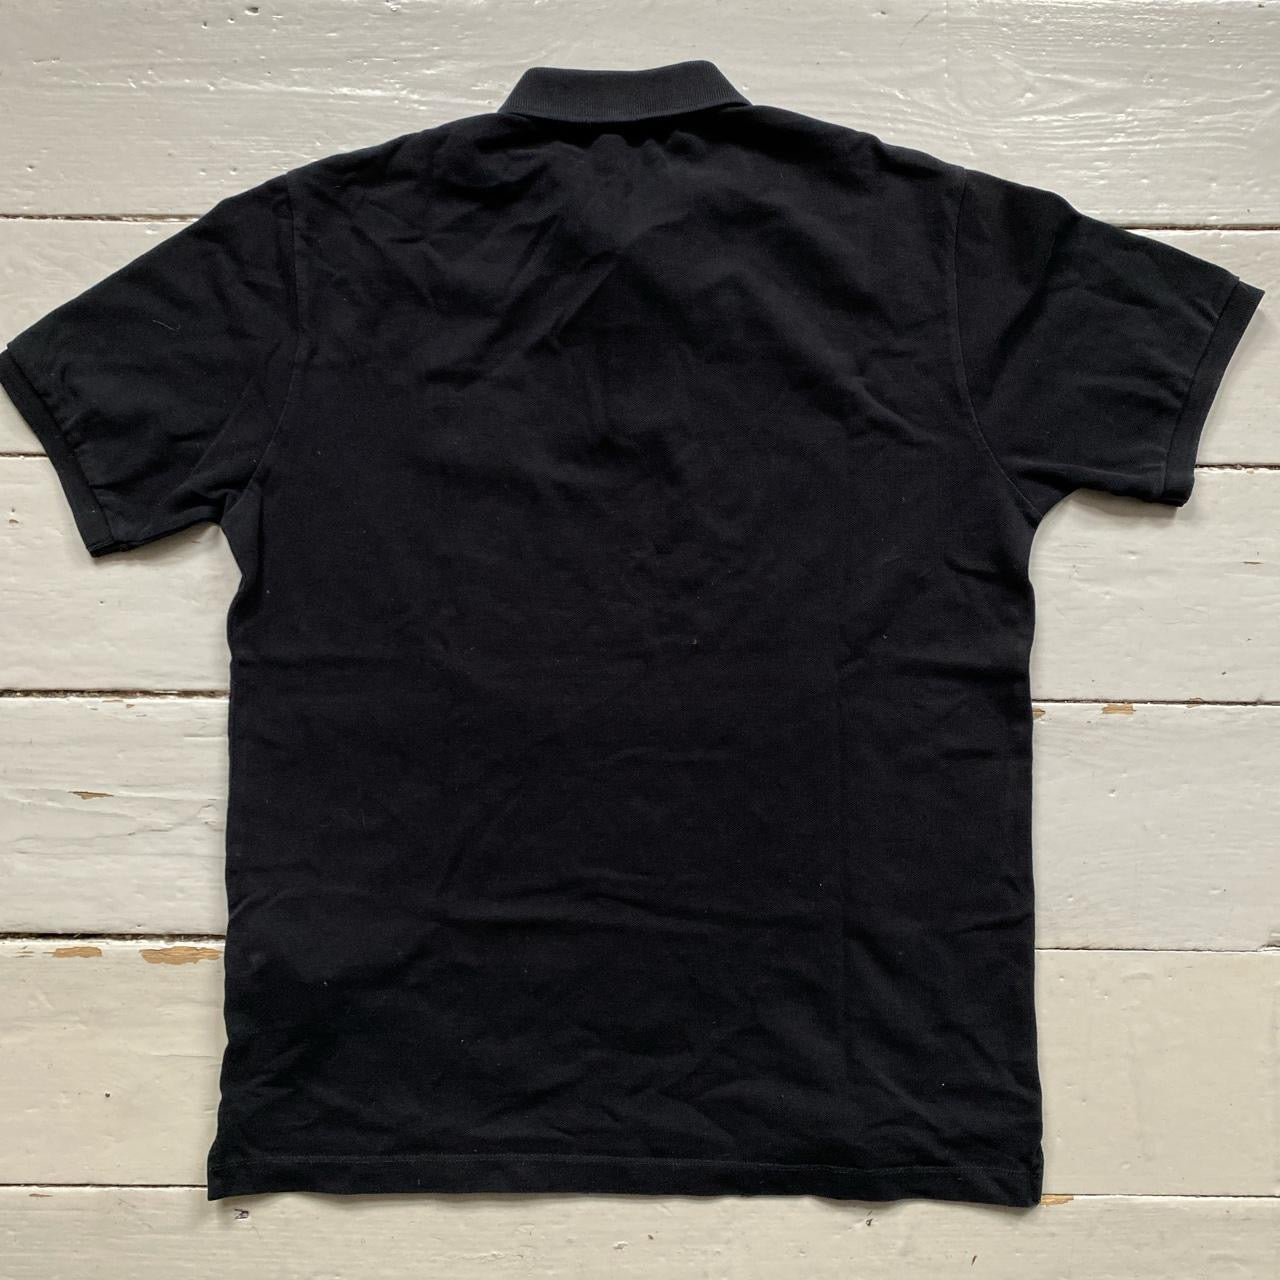 Stone Island Black Polo Shirt (Large)